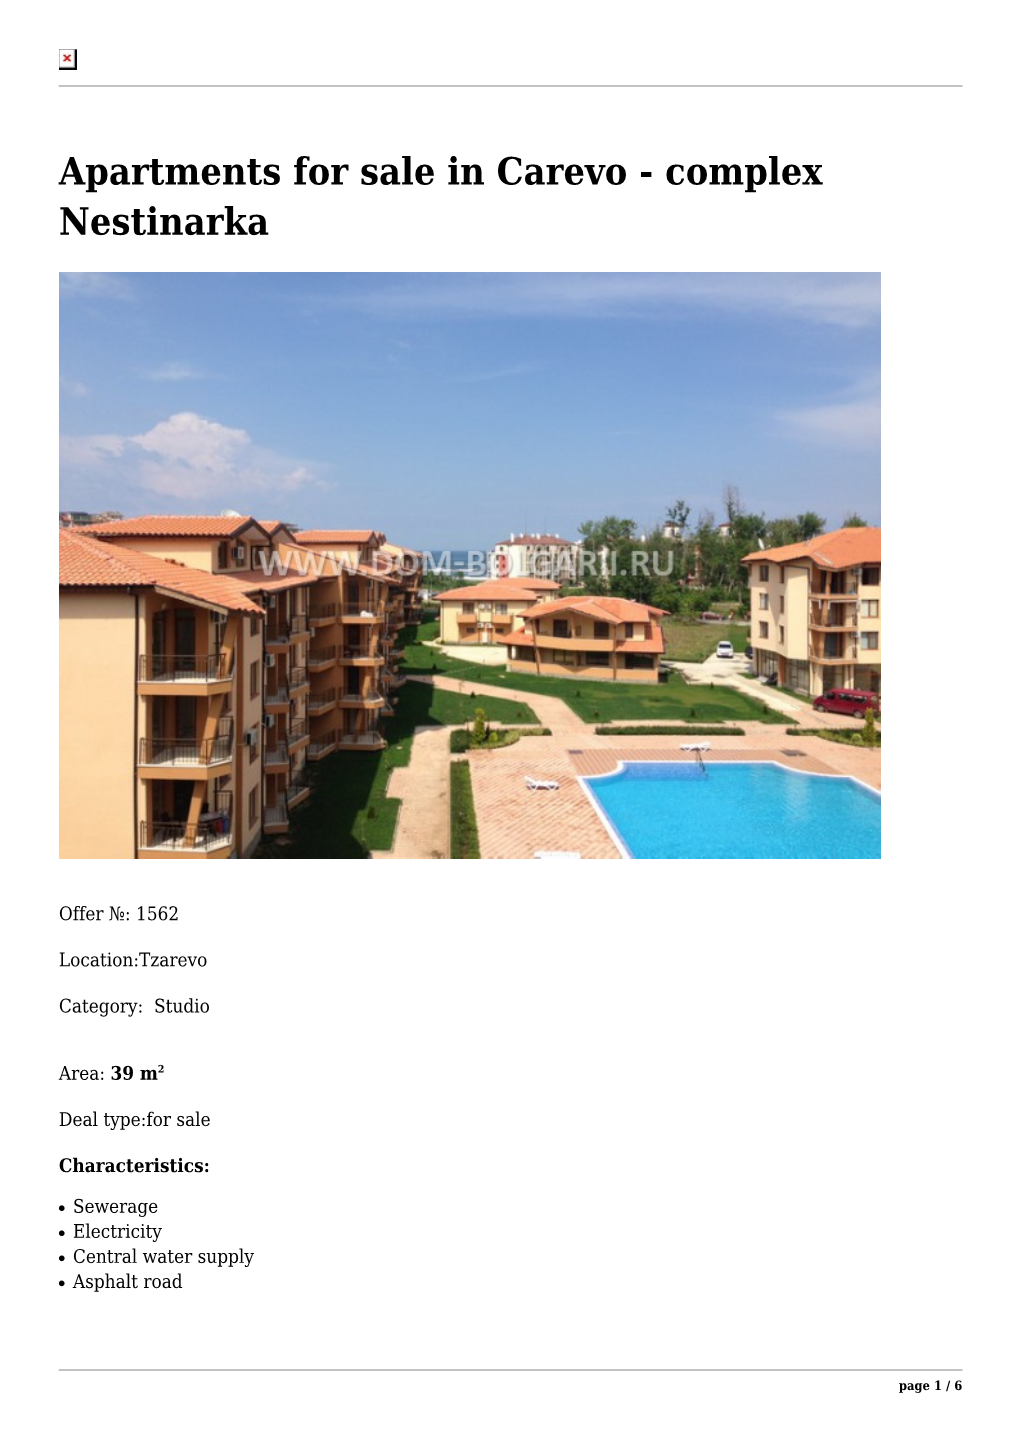 Apartments for Sale in Carevo - Complex Nestinarka